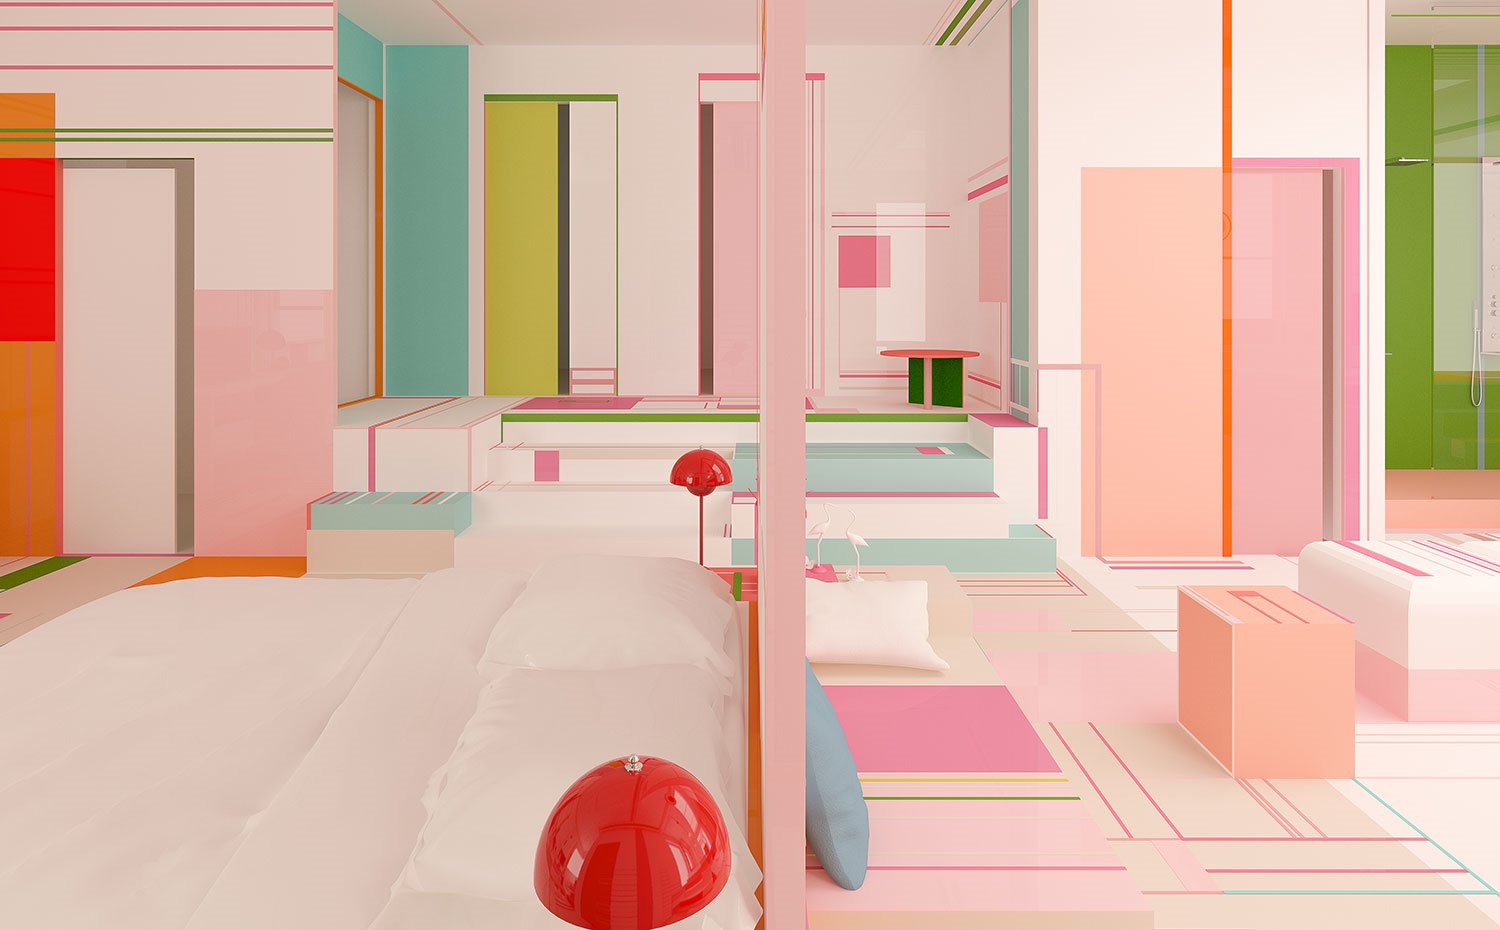 Panel divisor con perfilería en rosa entre zona de dormitorio y zona de estar